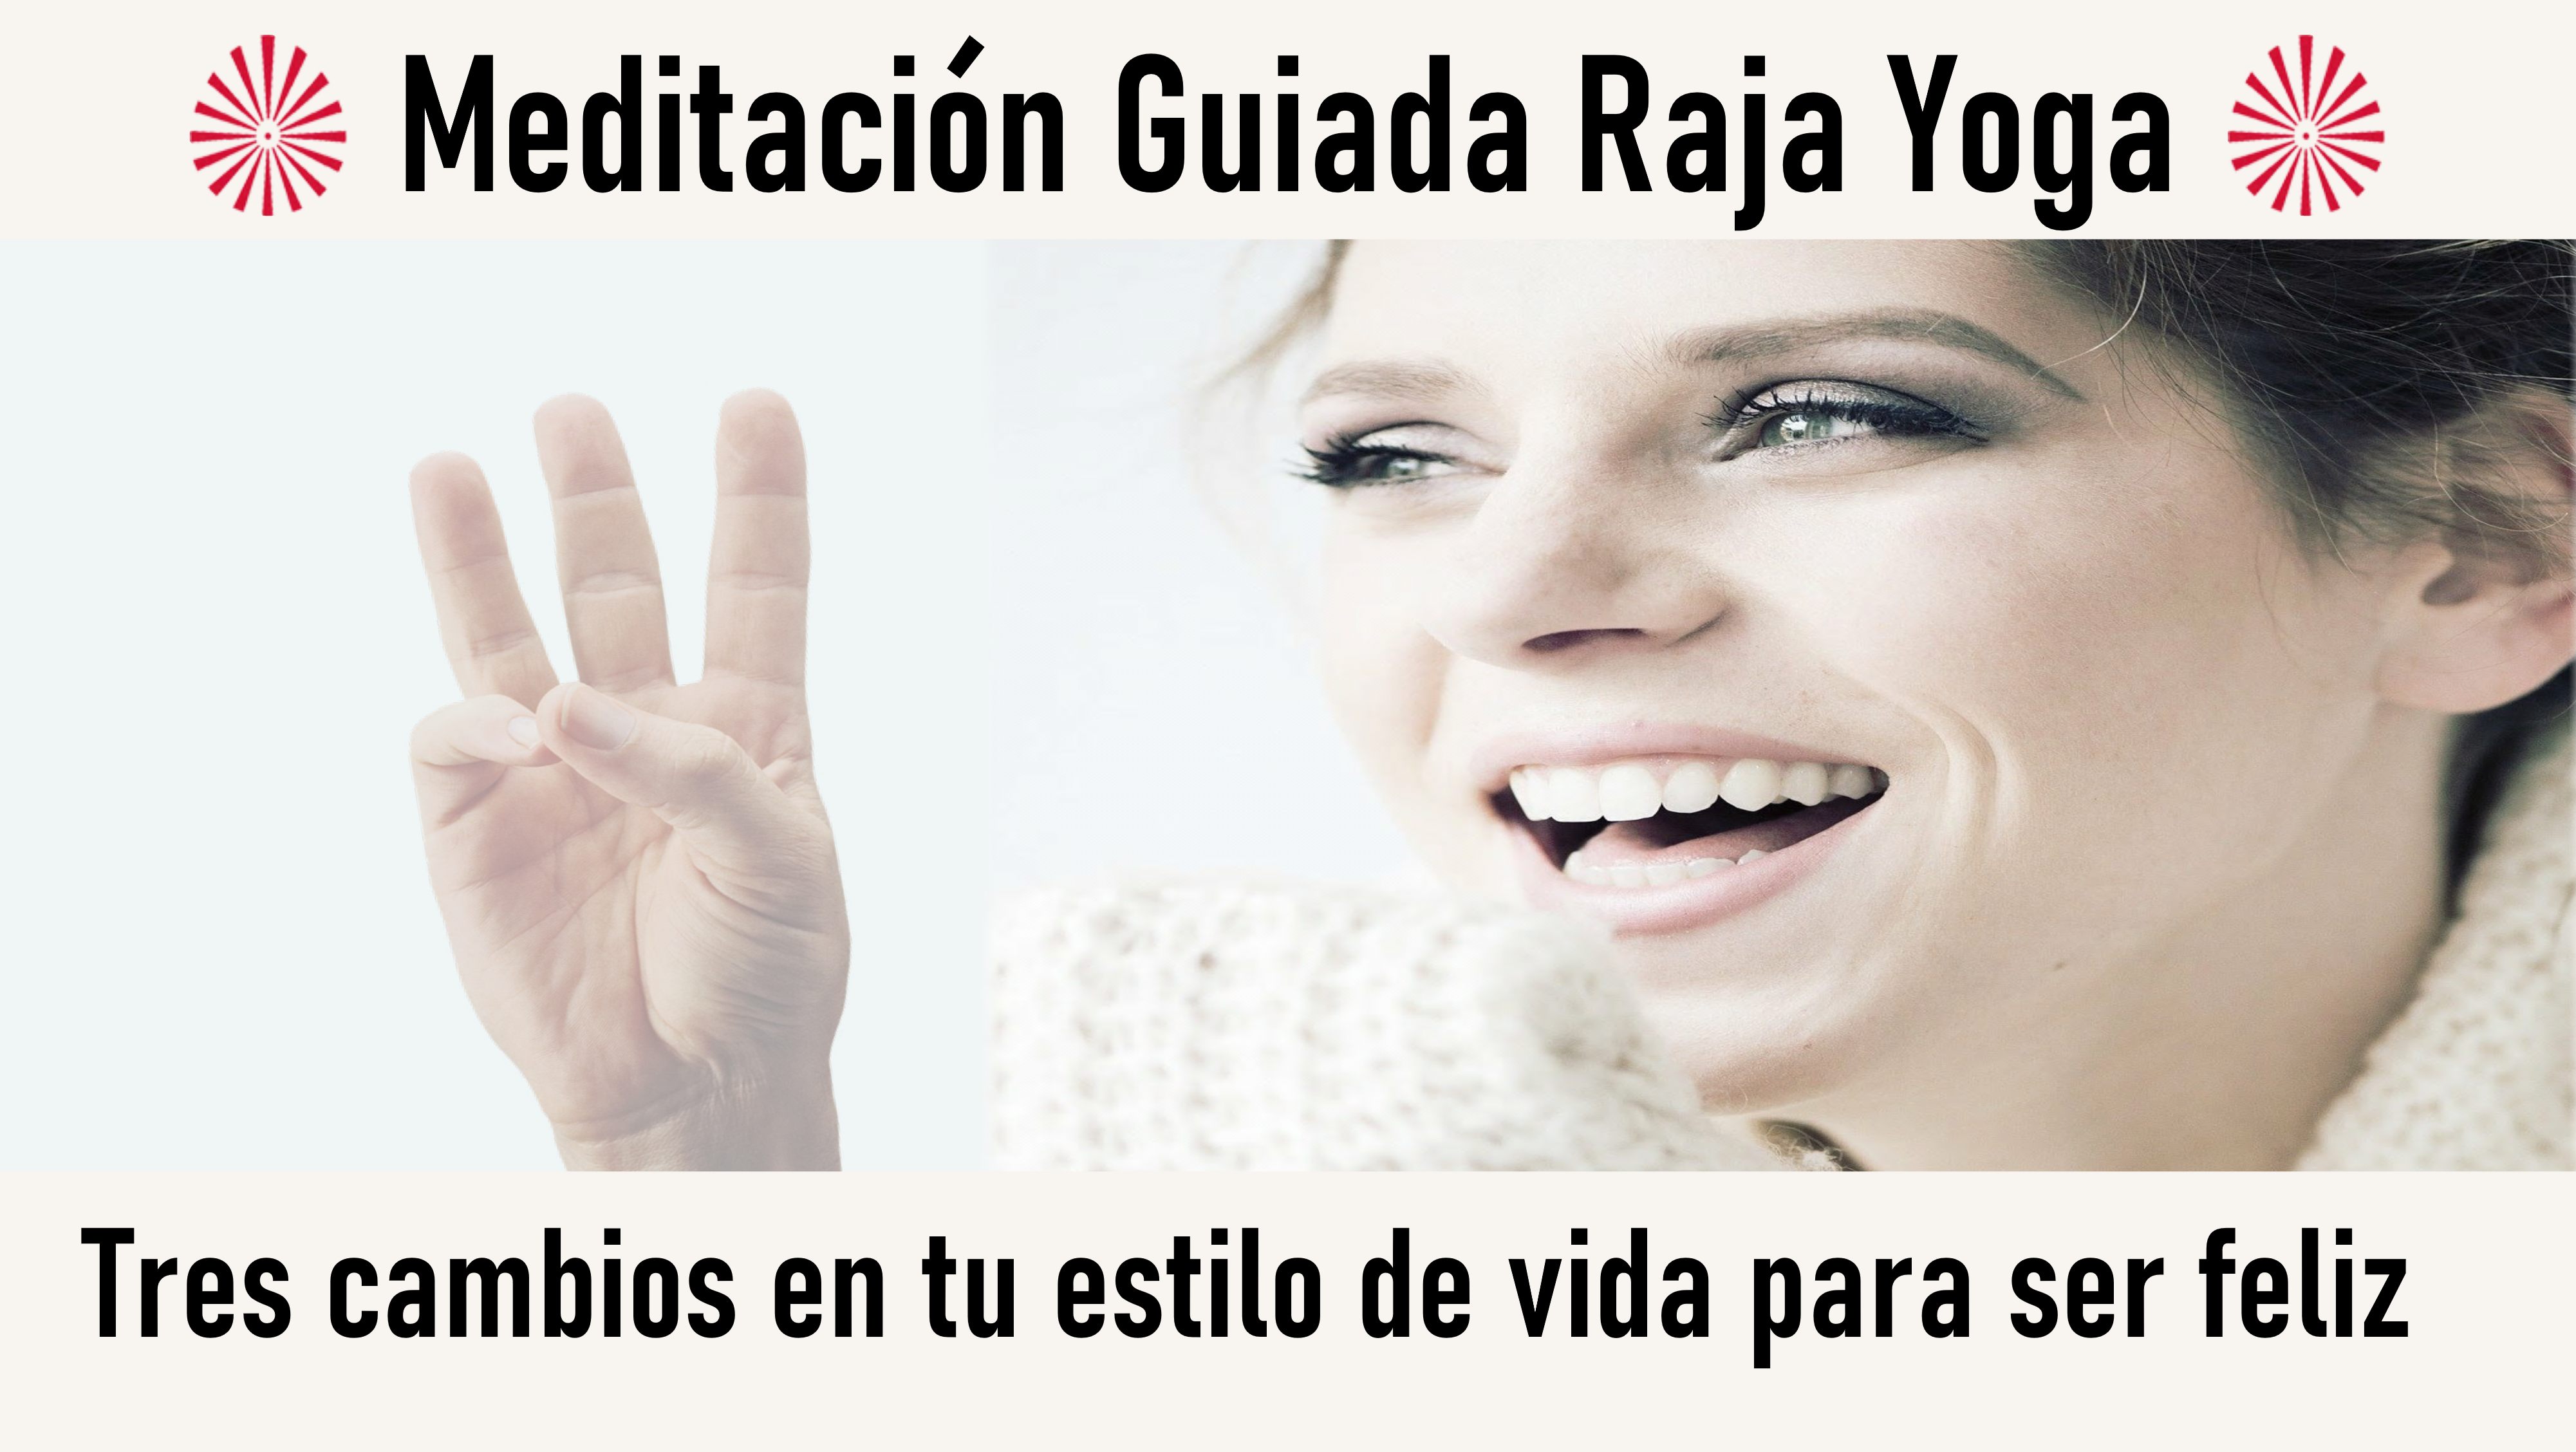 Meditación Raja Yoga: Tres cambios en tu estilo de vida para ser feliz (13 Agosto 2020) On-line desde Barcelona